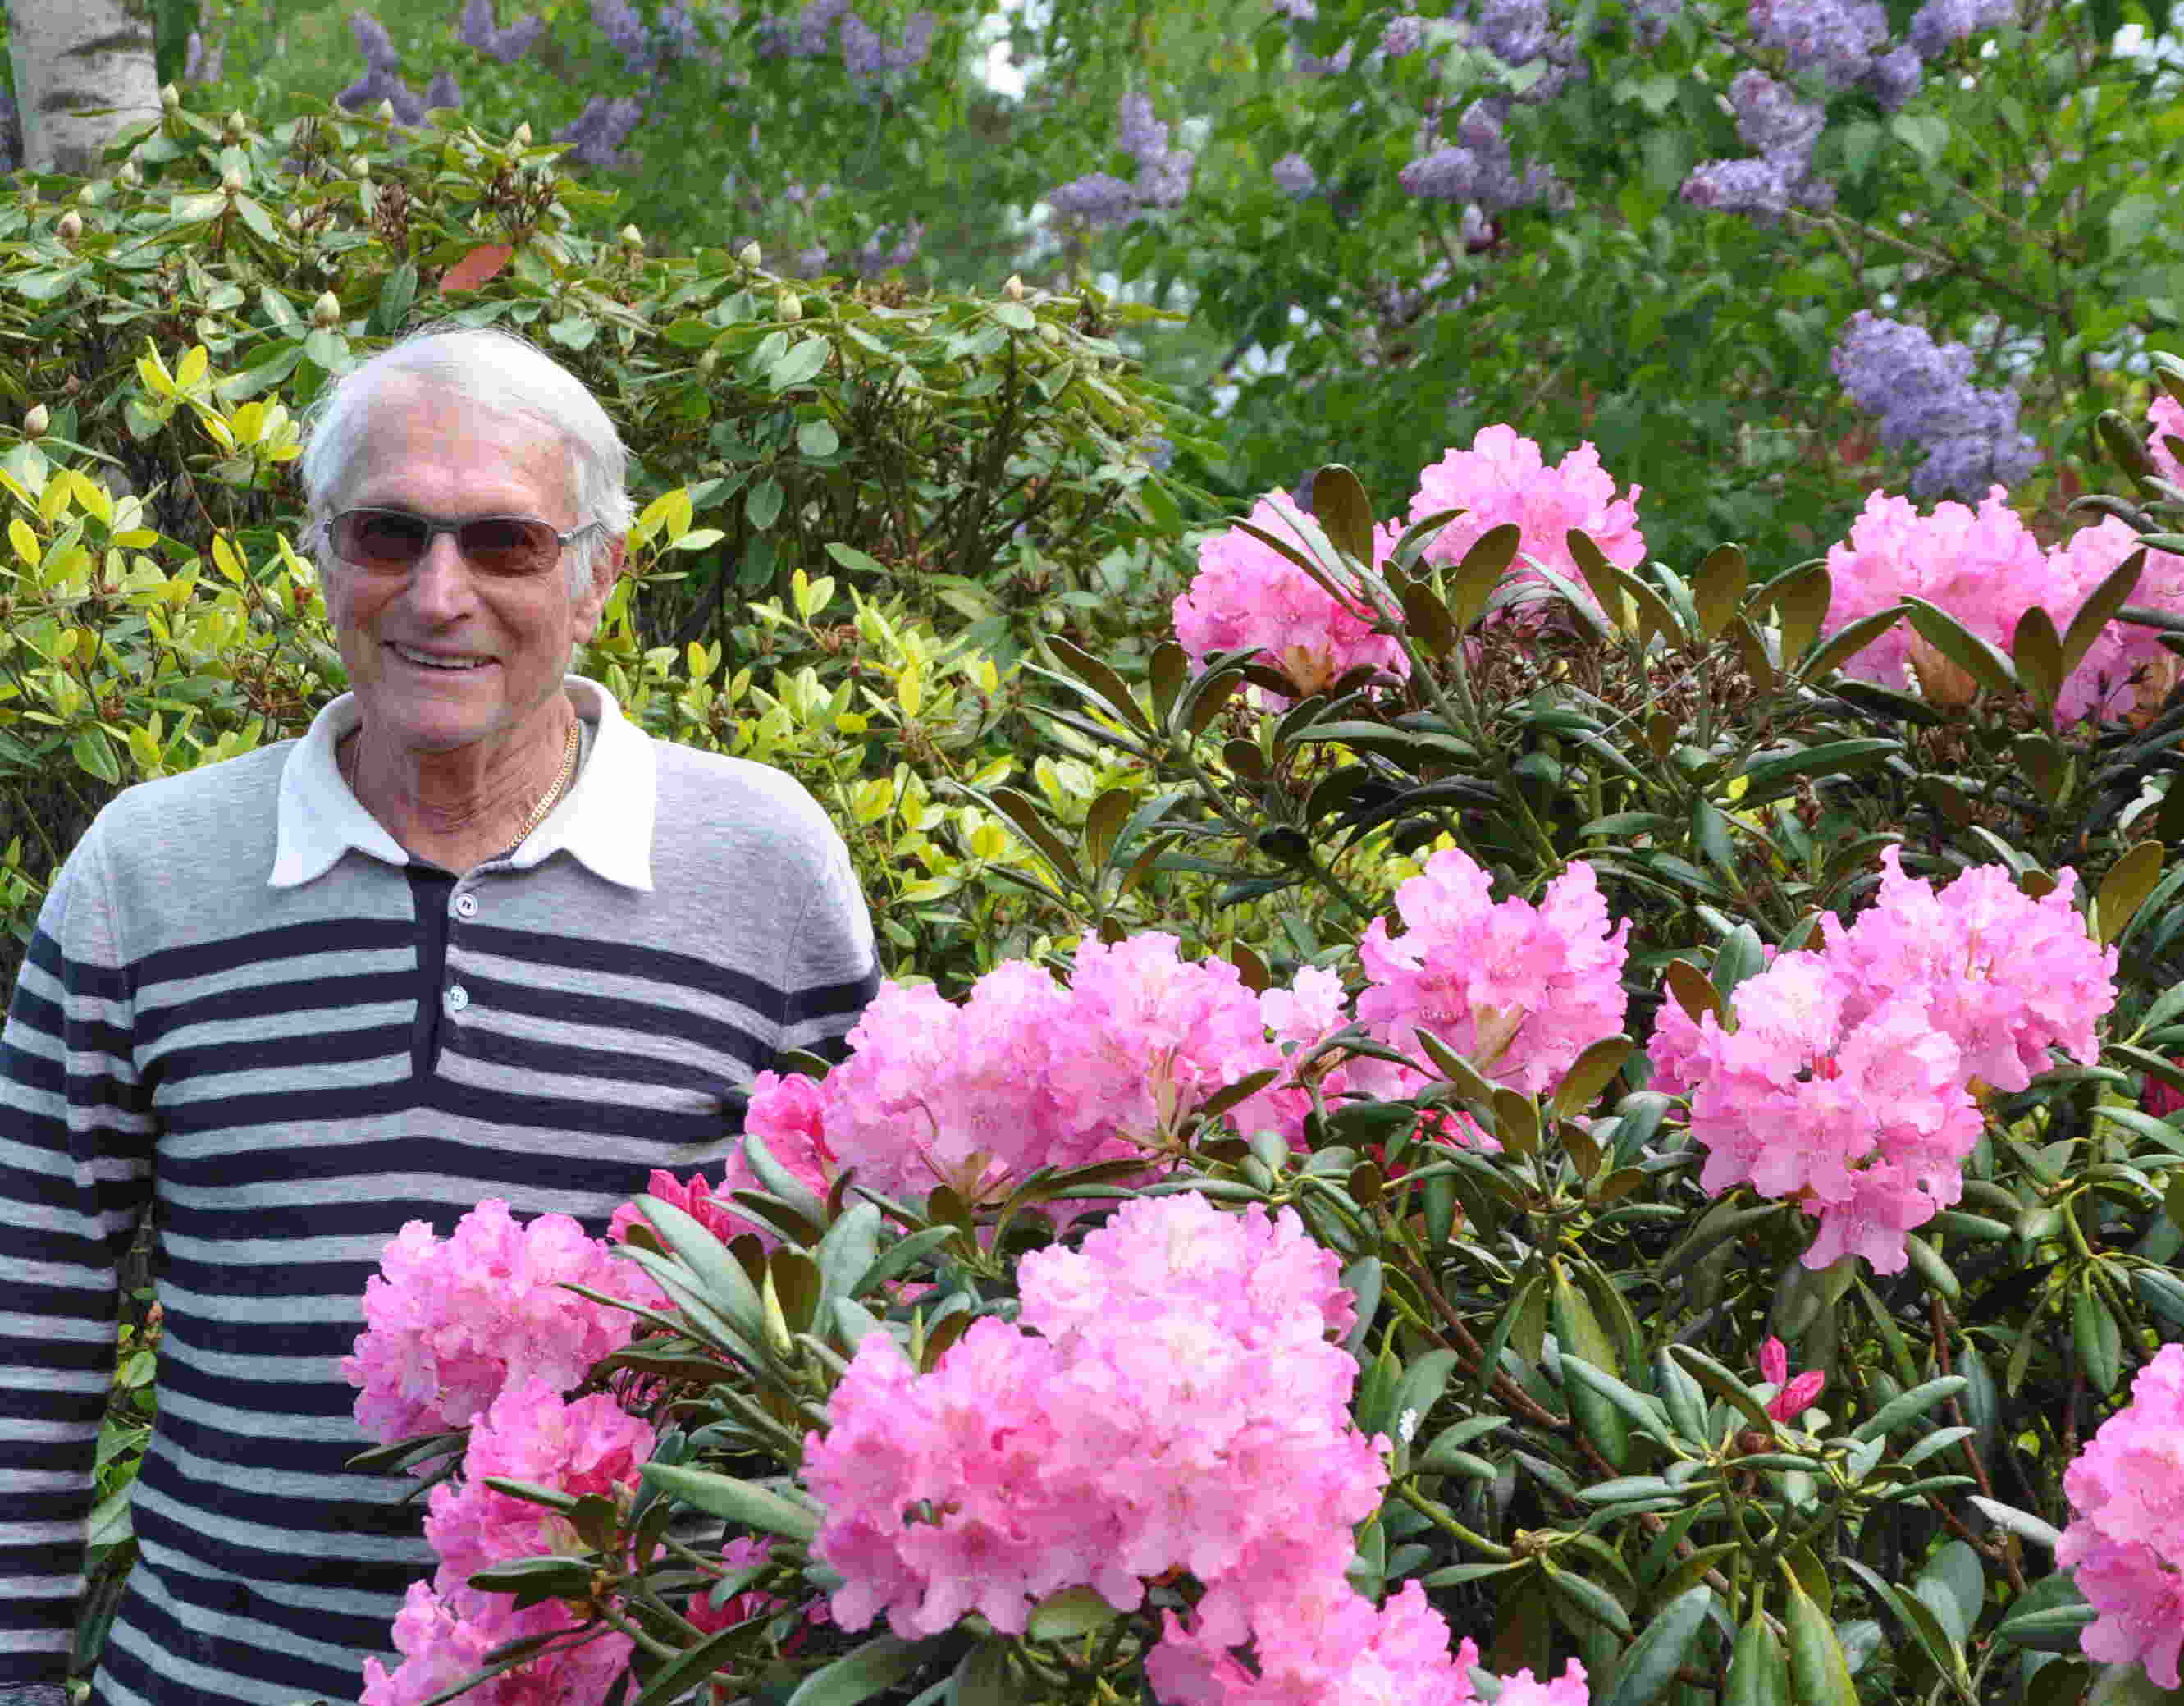 Rhododendron vill ha sur jord och luftig, torvrik jord.